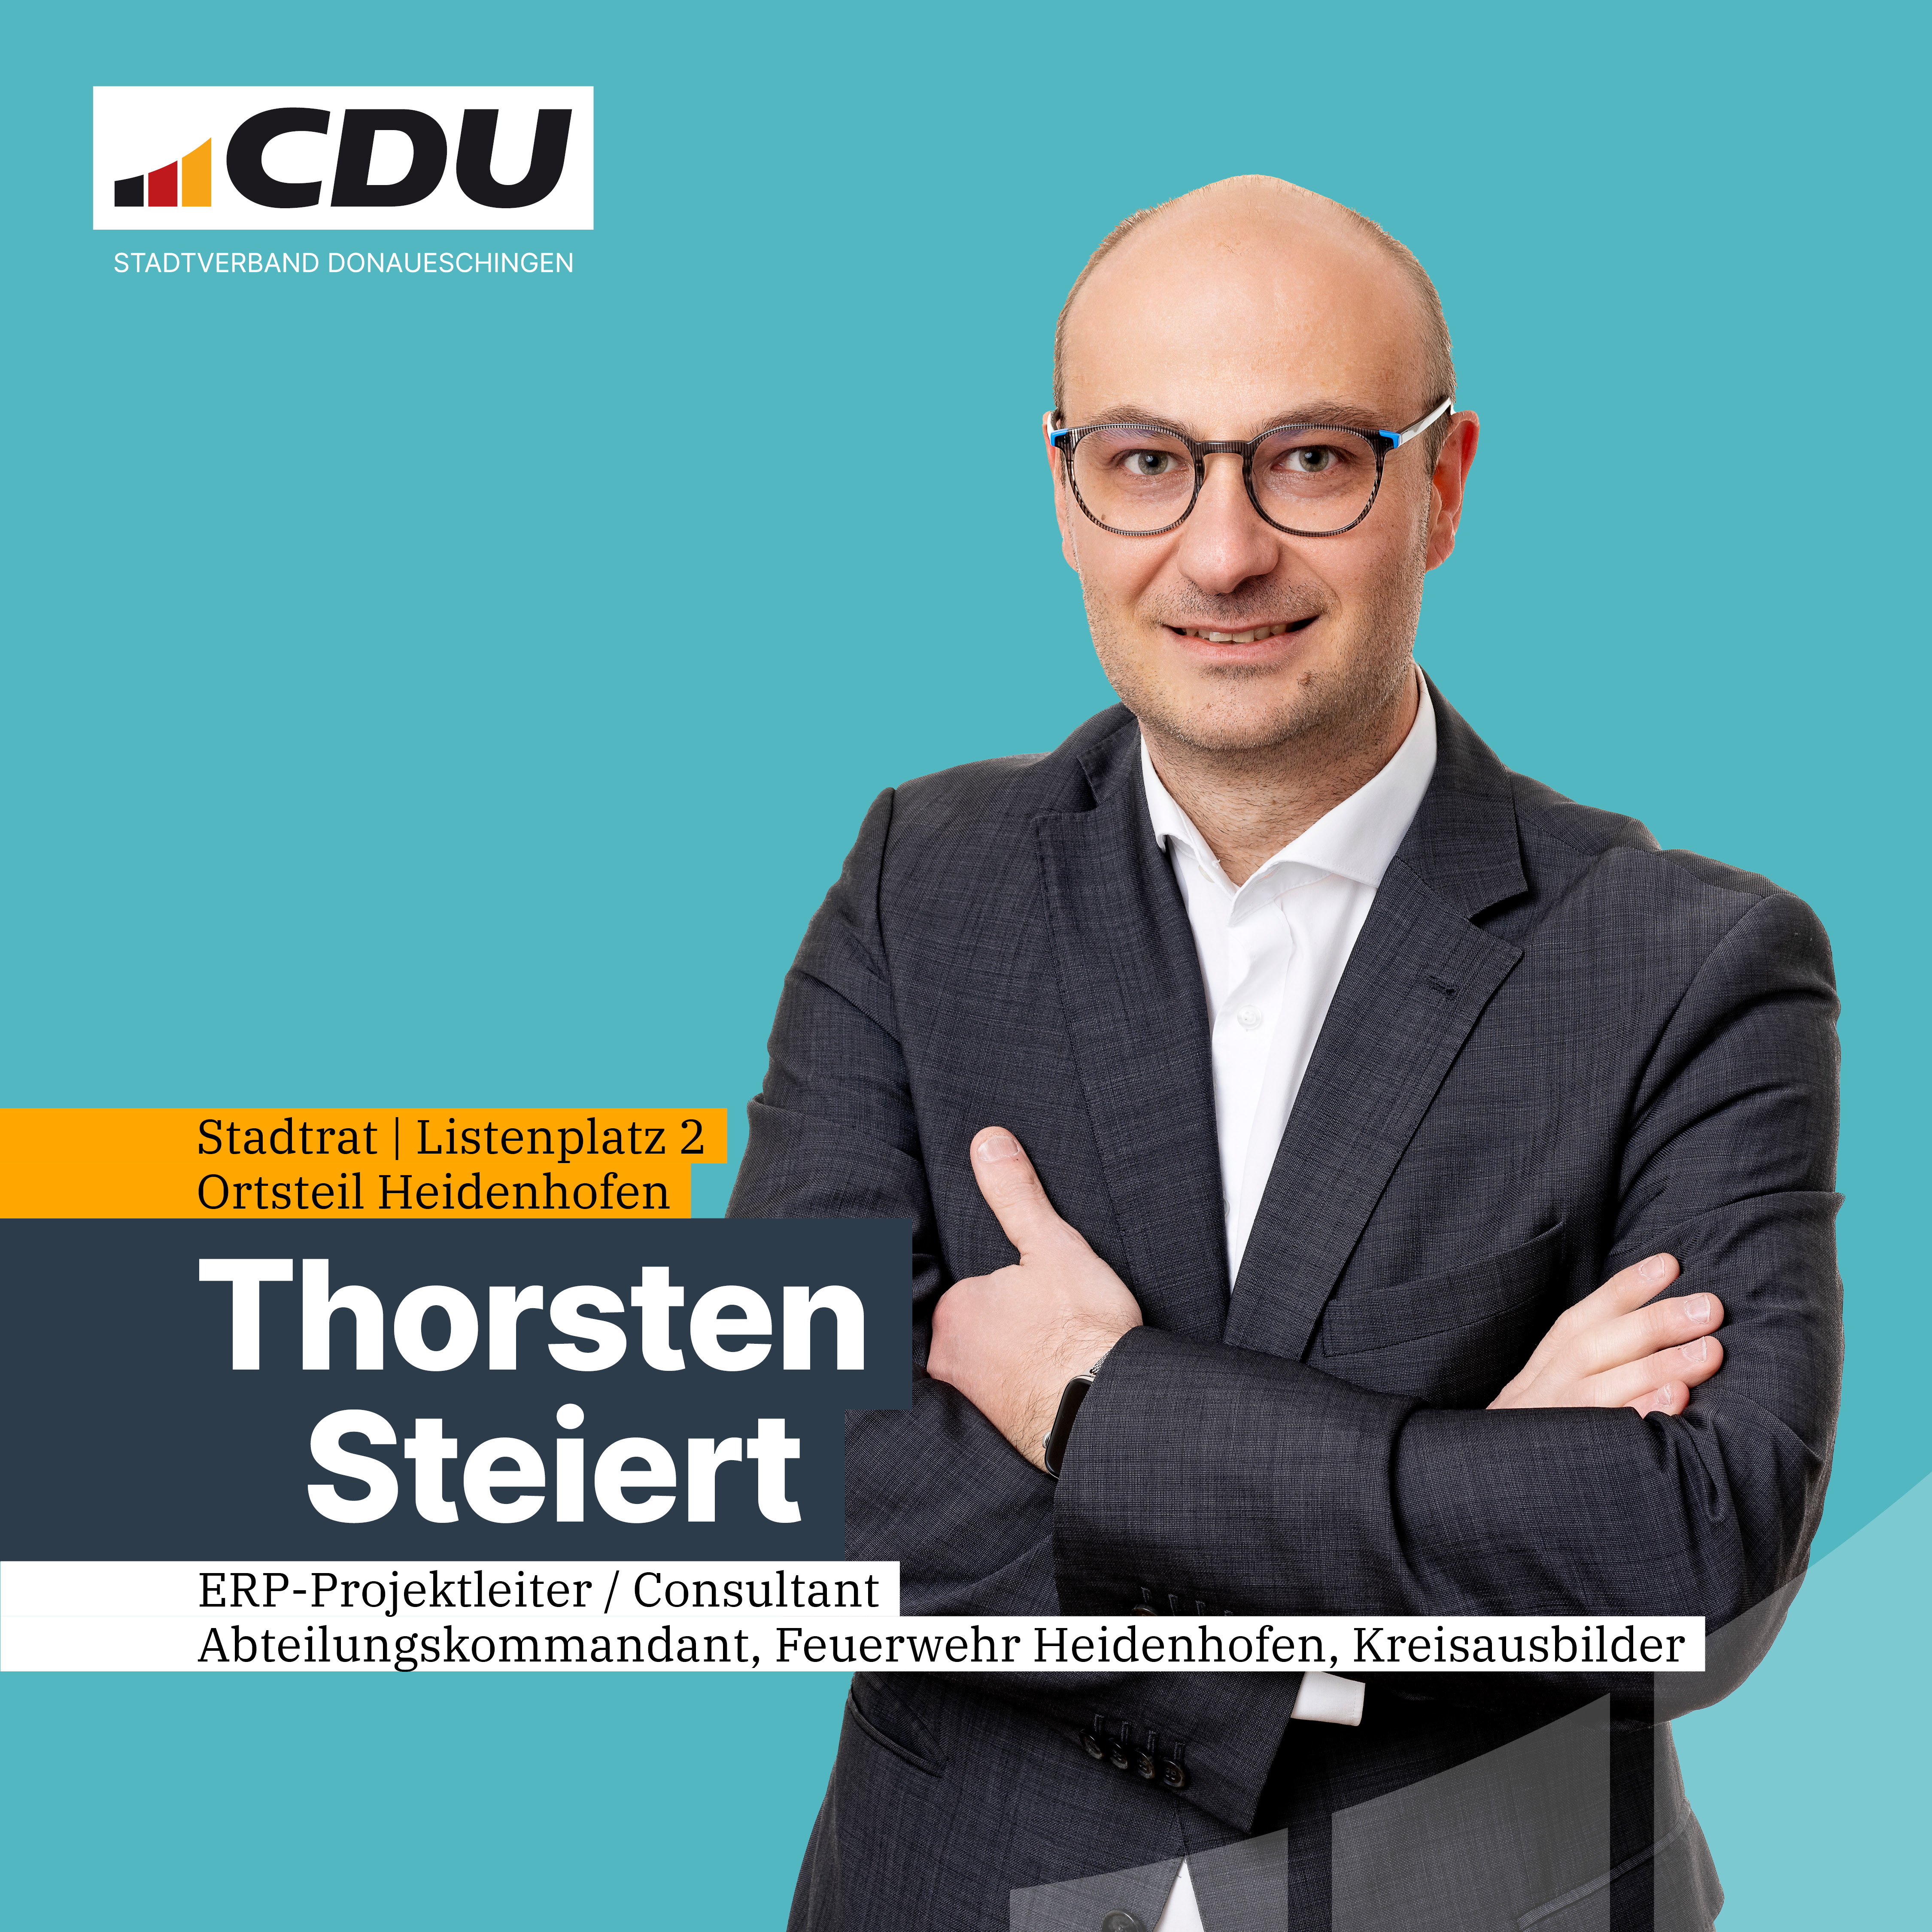  Thorsten Steiert